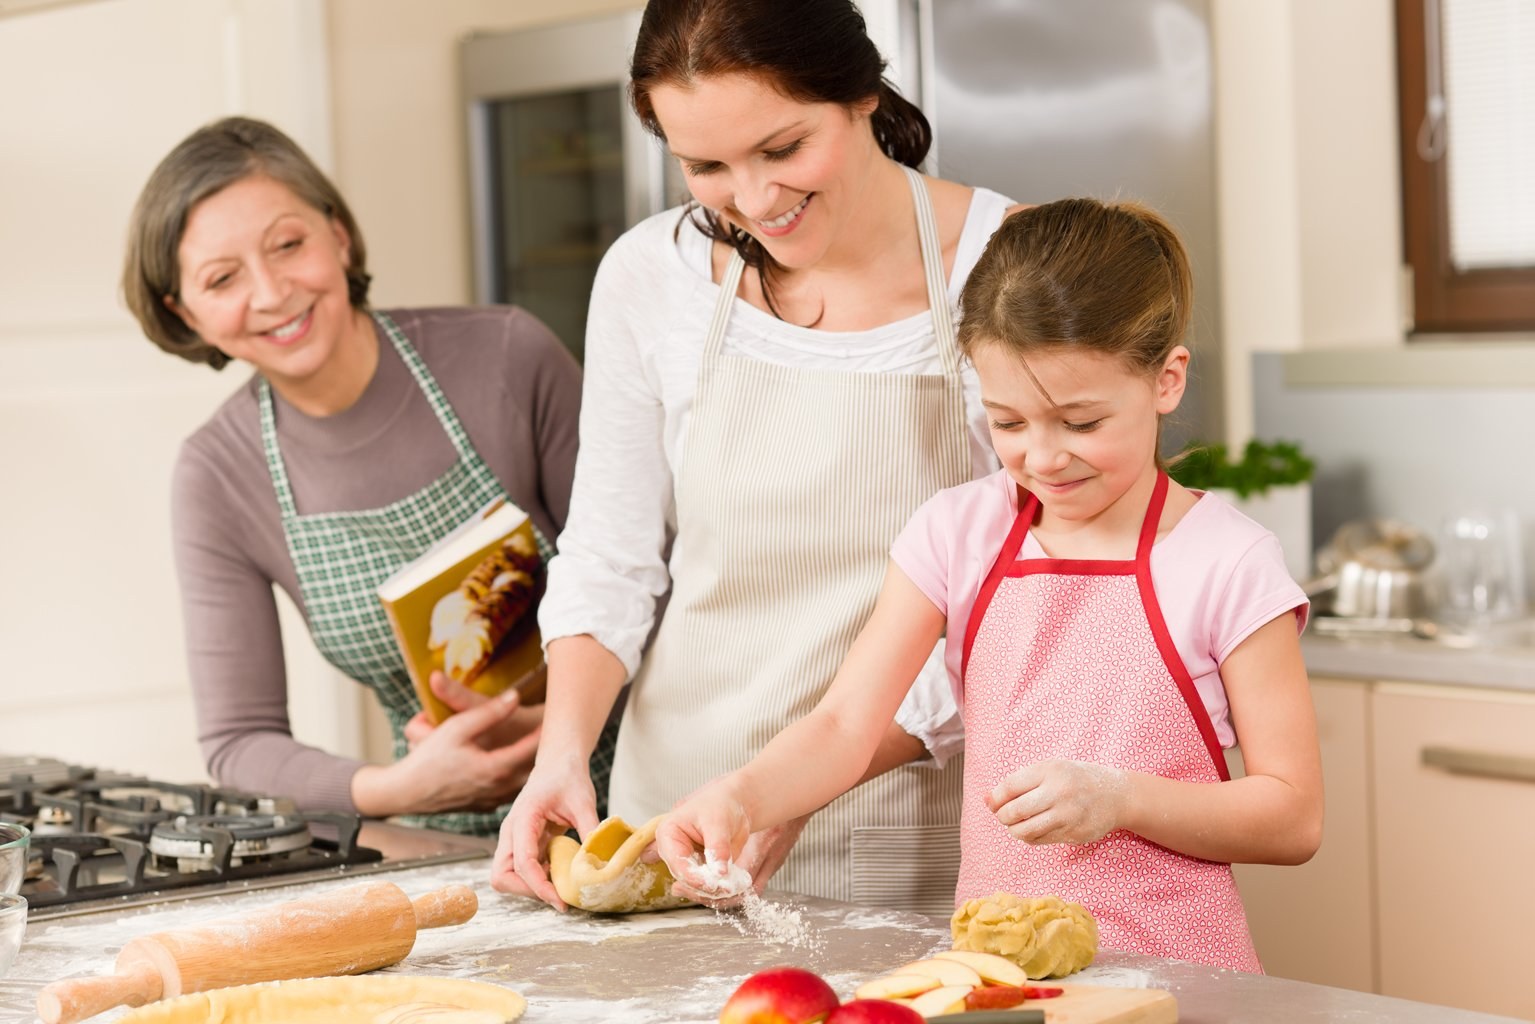 Позавтракав мама и папа отправились за покупками. Кухня для детей. Семья на кухне. Готовка с детьми на кухне. Дети готовят с родителями.